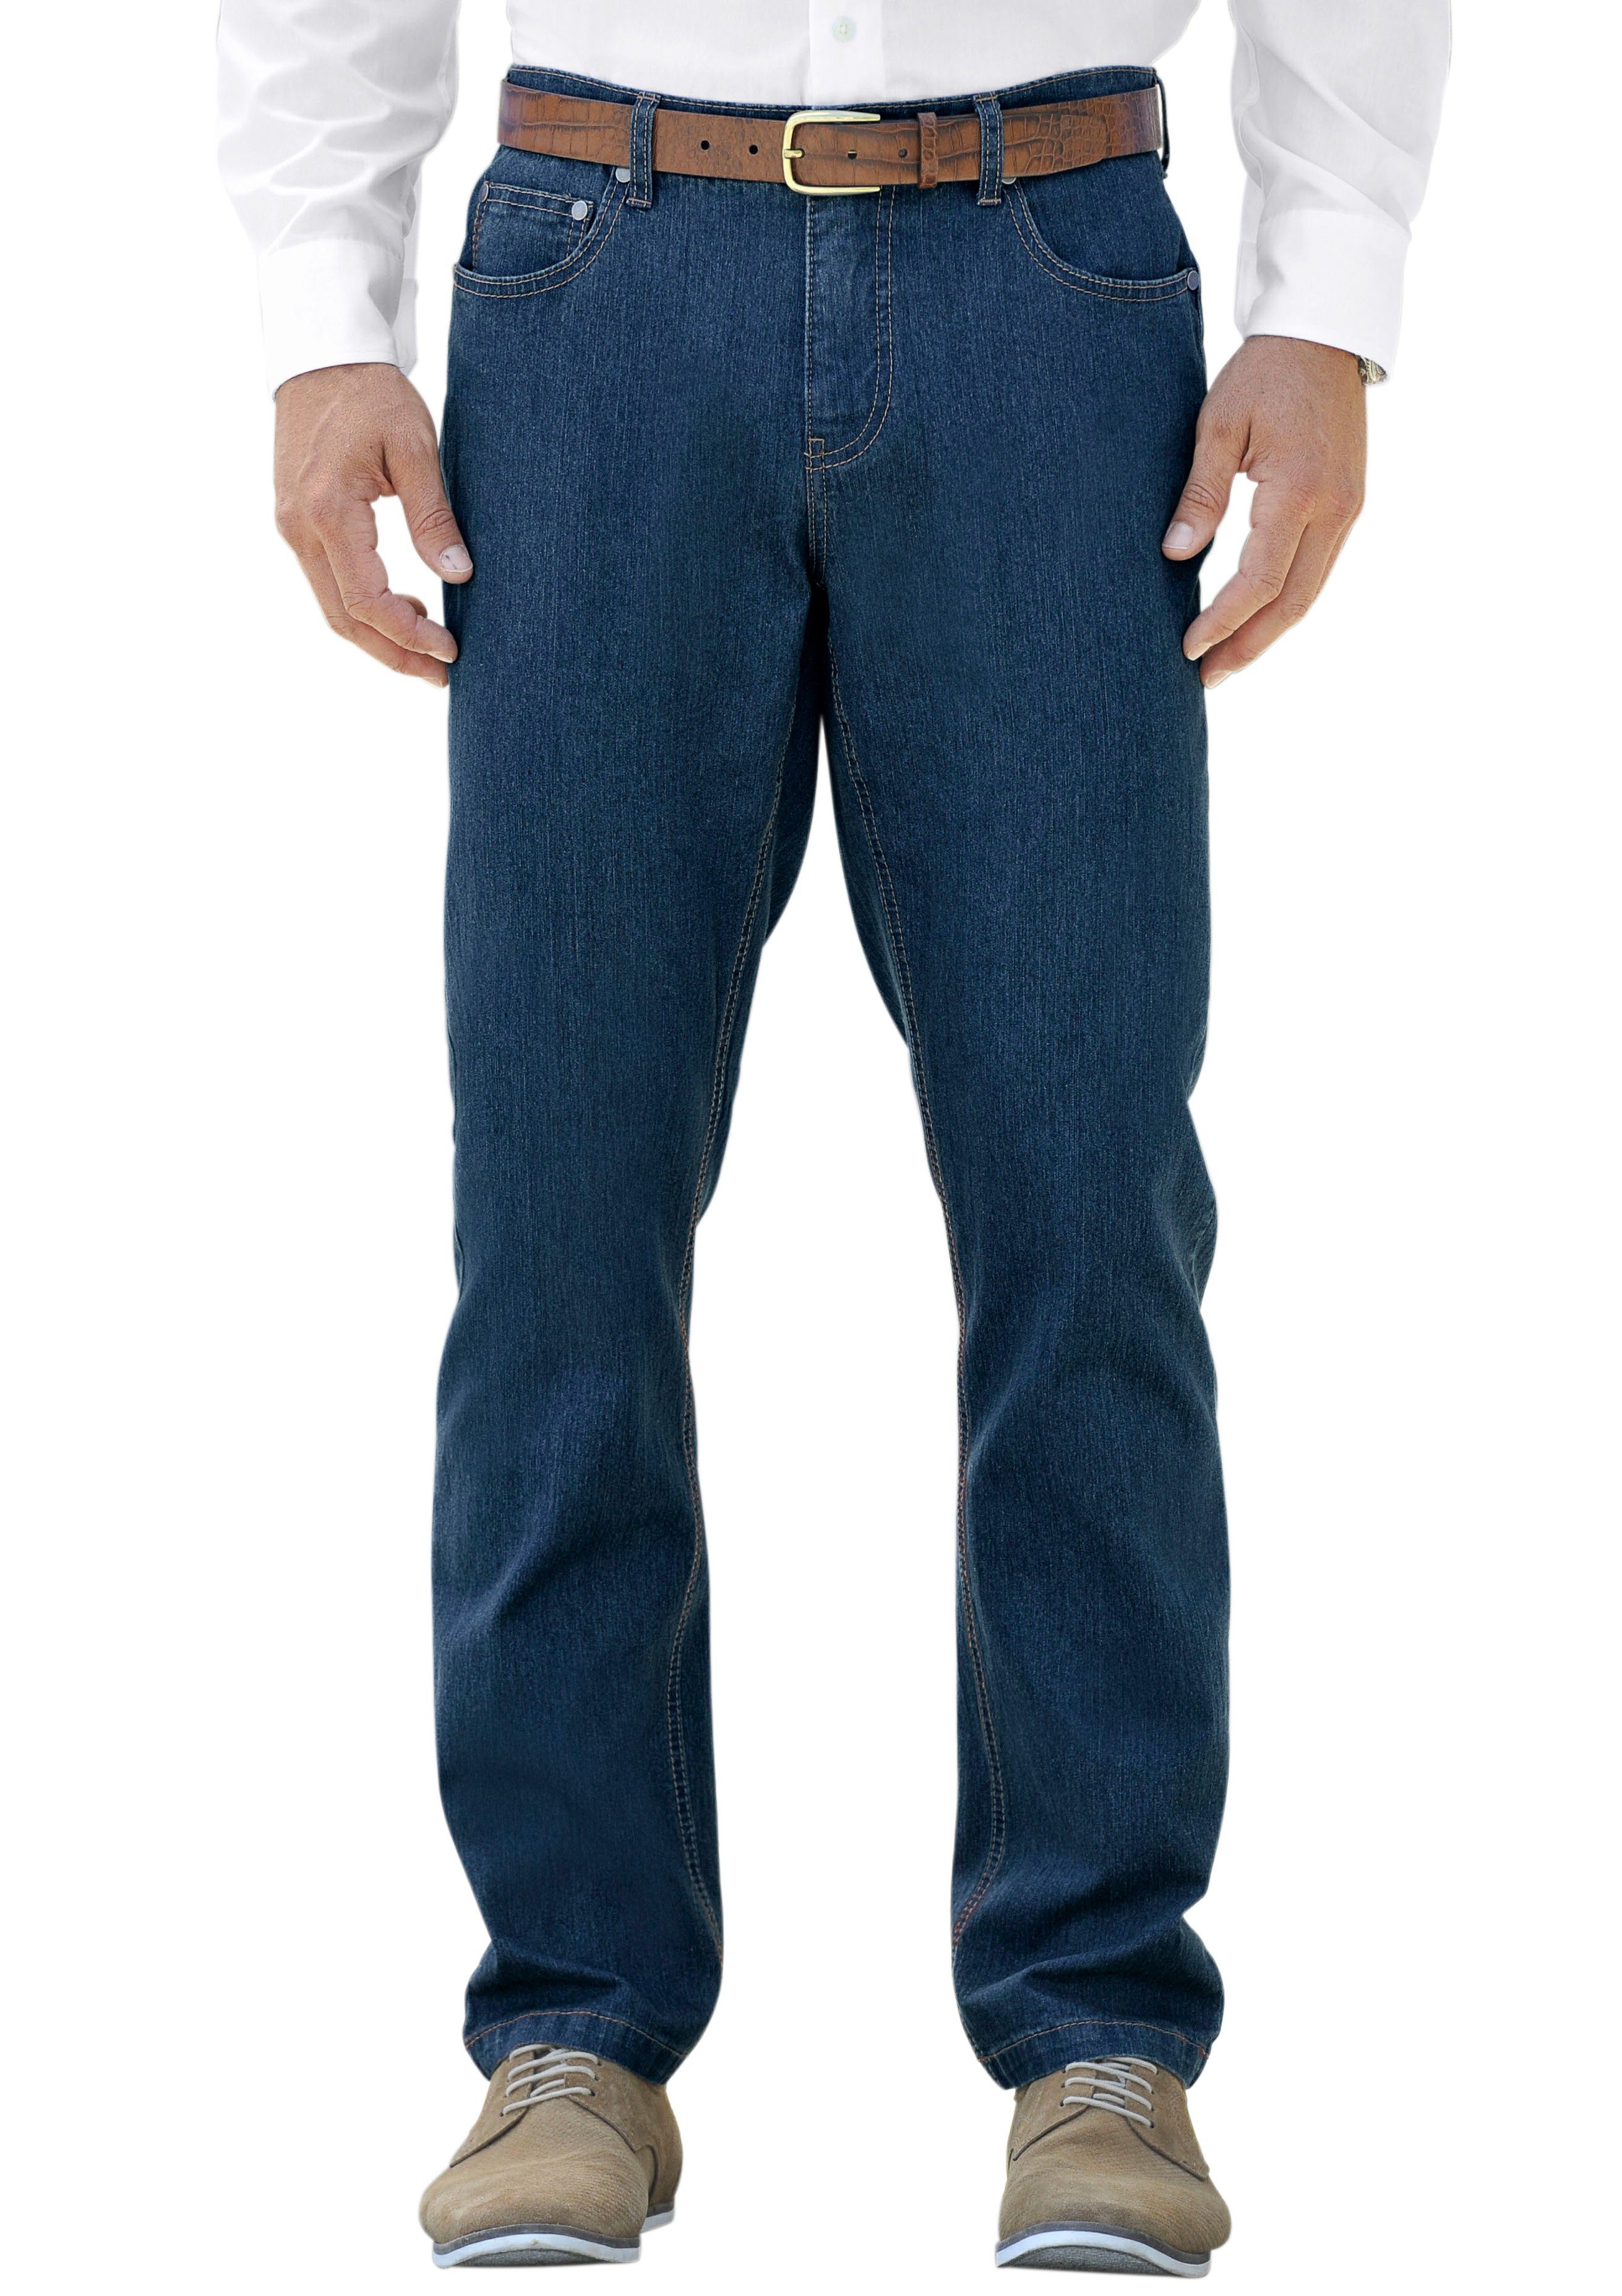 Otto - Marco Donati NU 15% KORTING: MARCO DONATI jeans in five-pocketsmodel